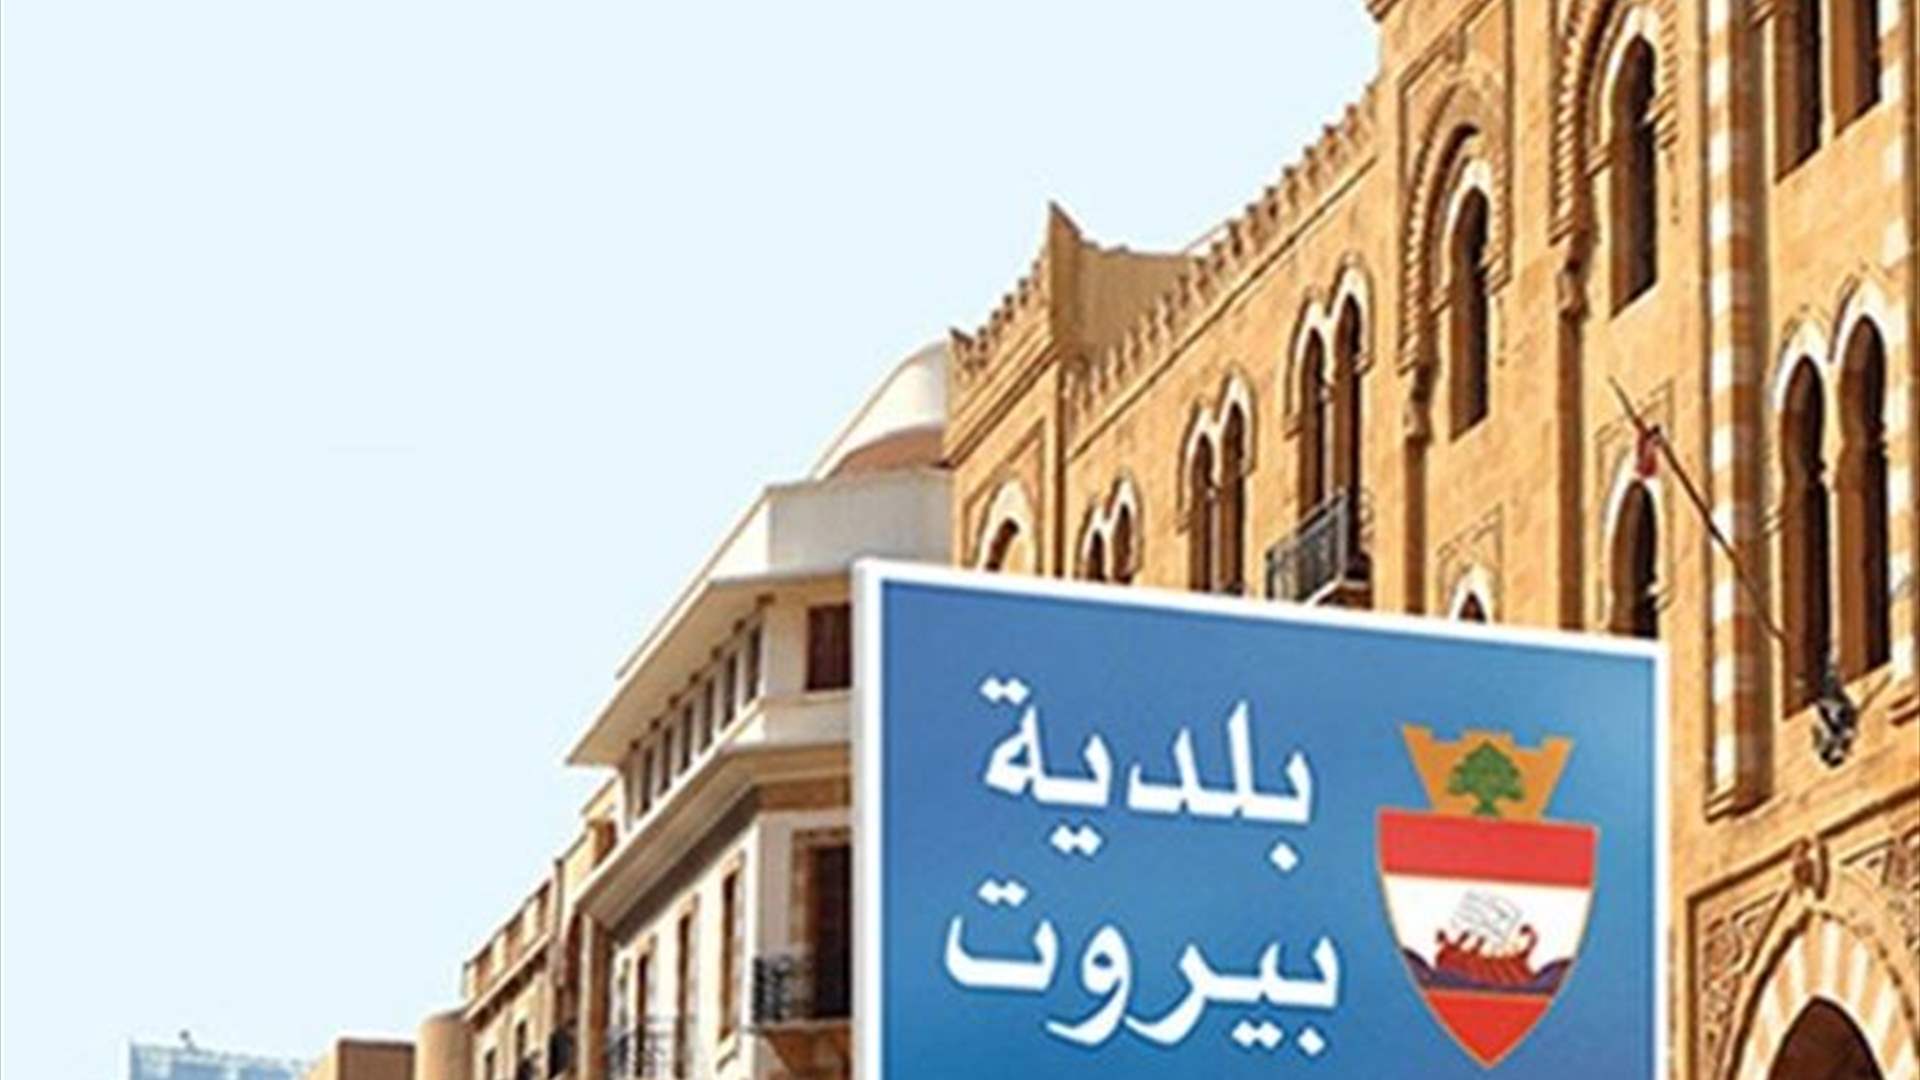 محافظ بيروت يطلب من المواطنين توخي الحذر وعدم الاقتراب من الكورنيش البحري لمدينة بيروت (صور)